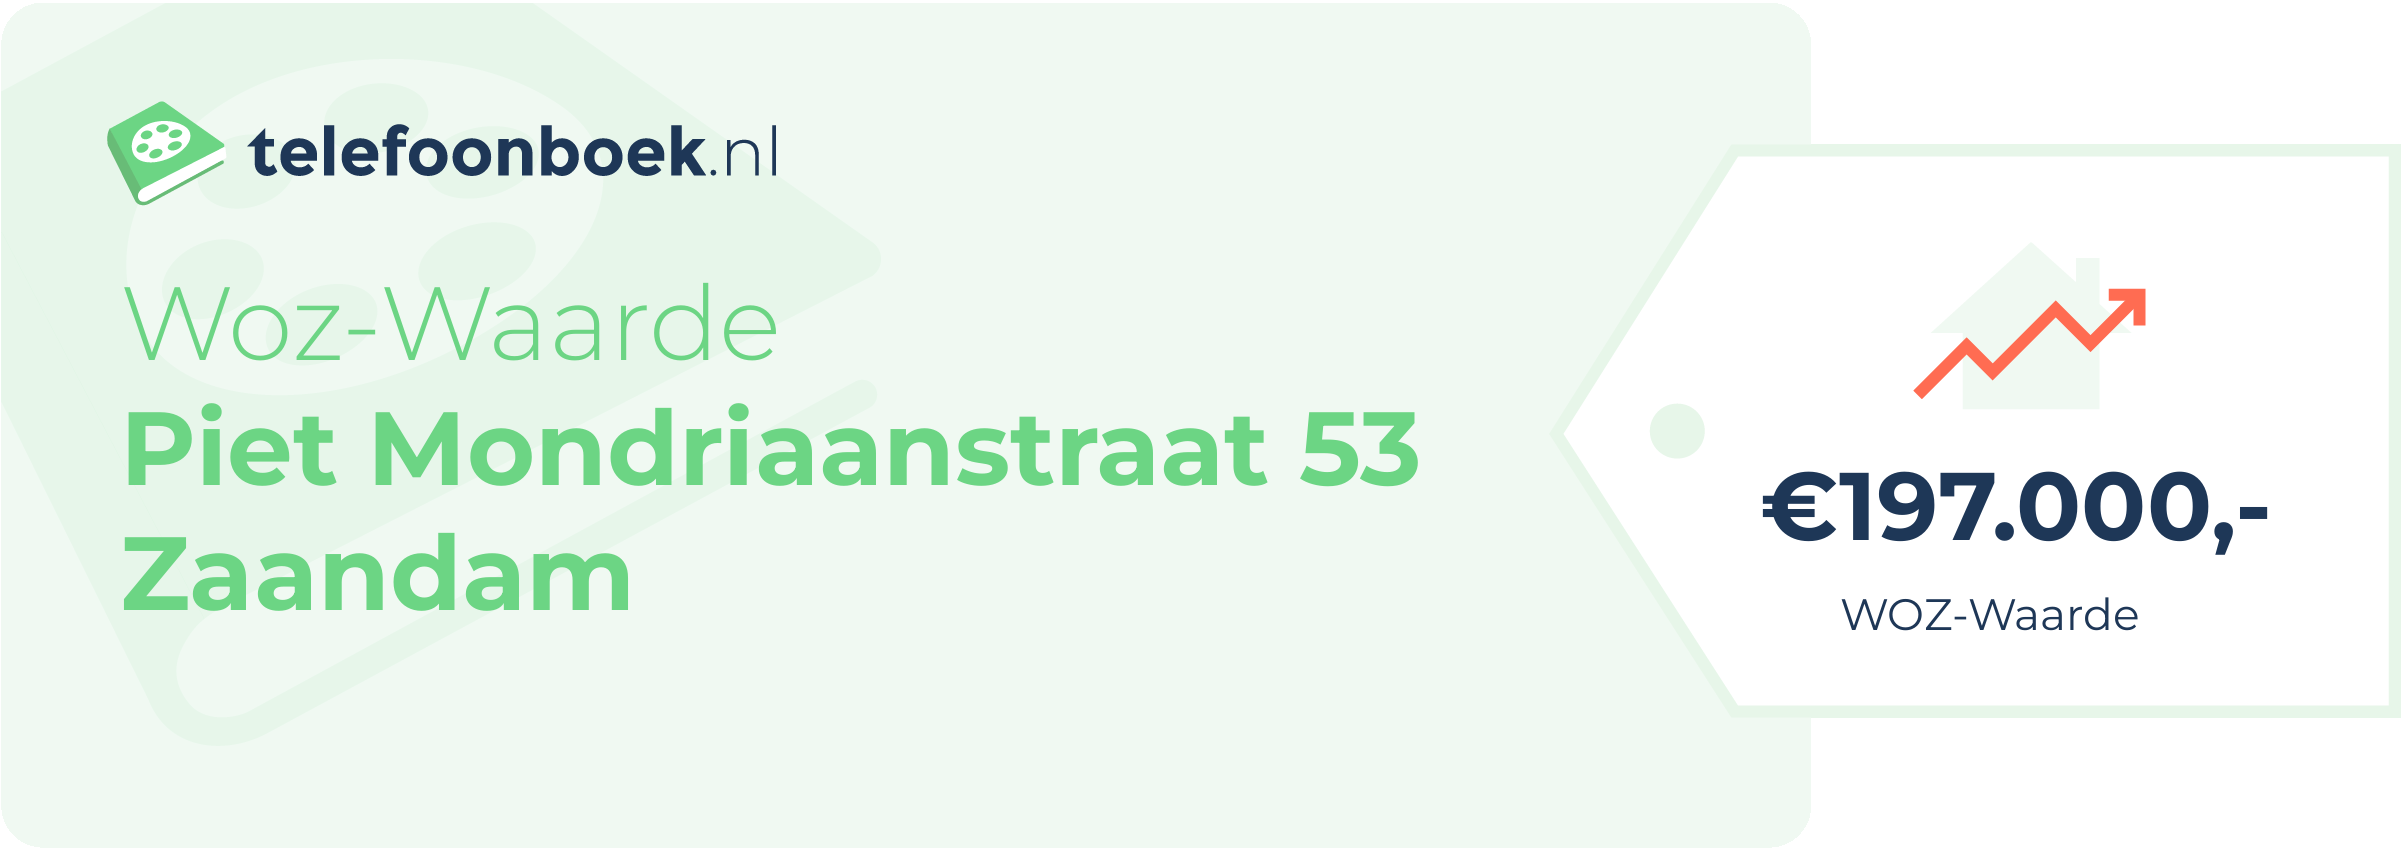 WOZ-waarde Piet Mondriaanstraat 53 Zaandam